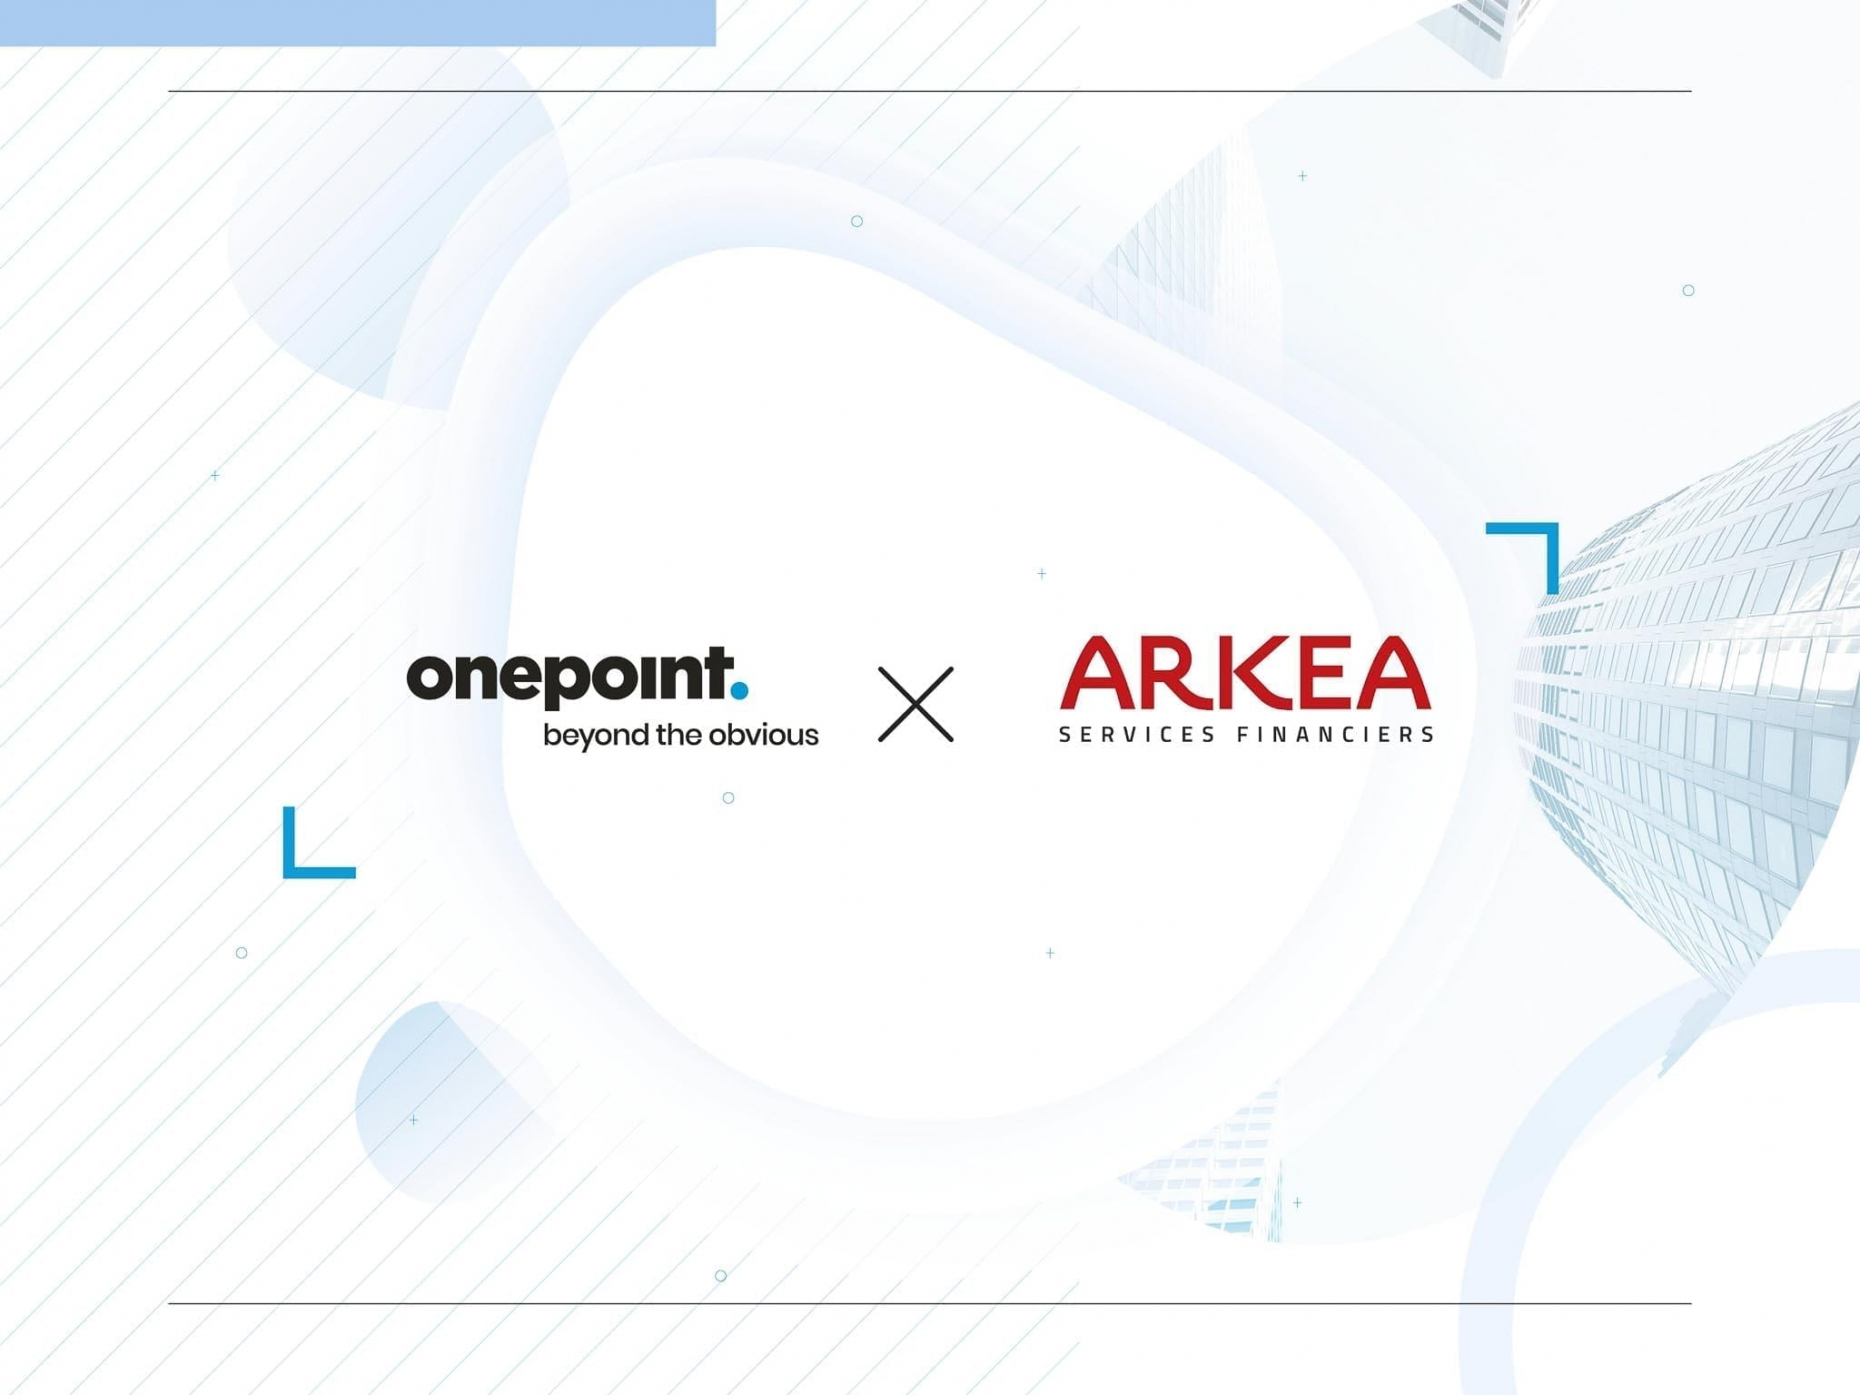 Arkéa s’associe à onepoint pour développer les métiers de la banque de demain